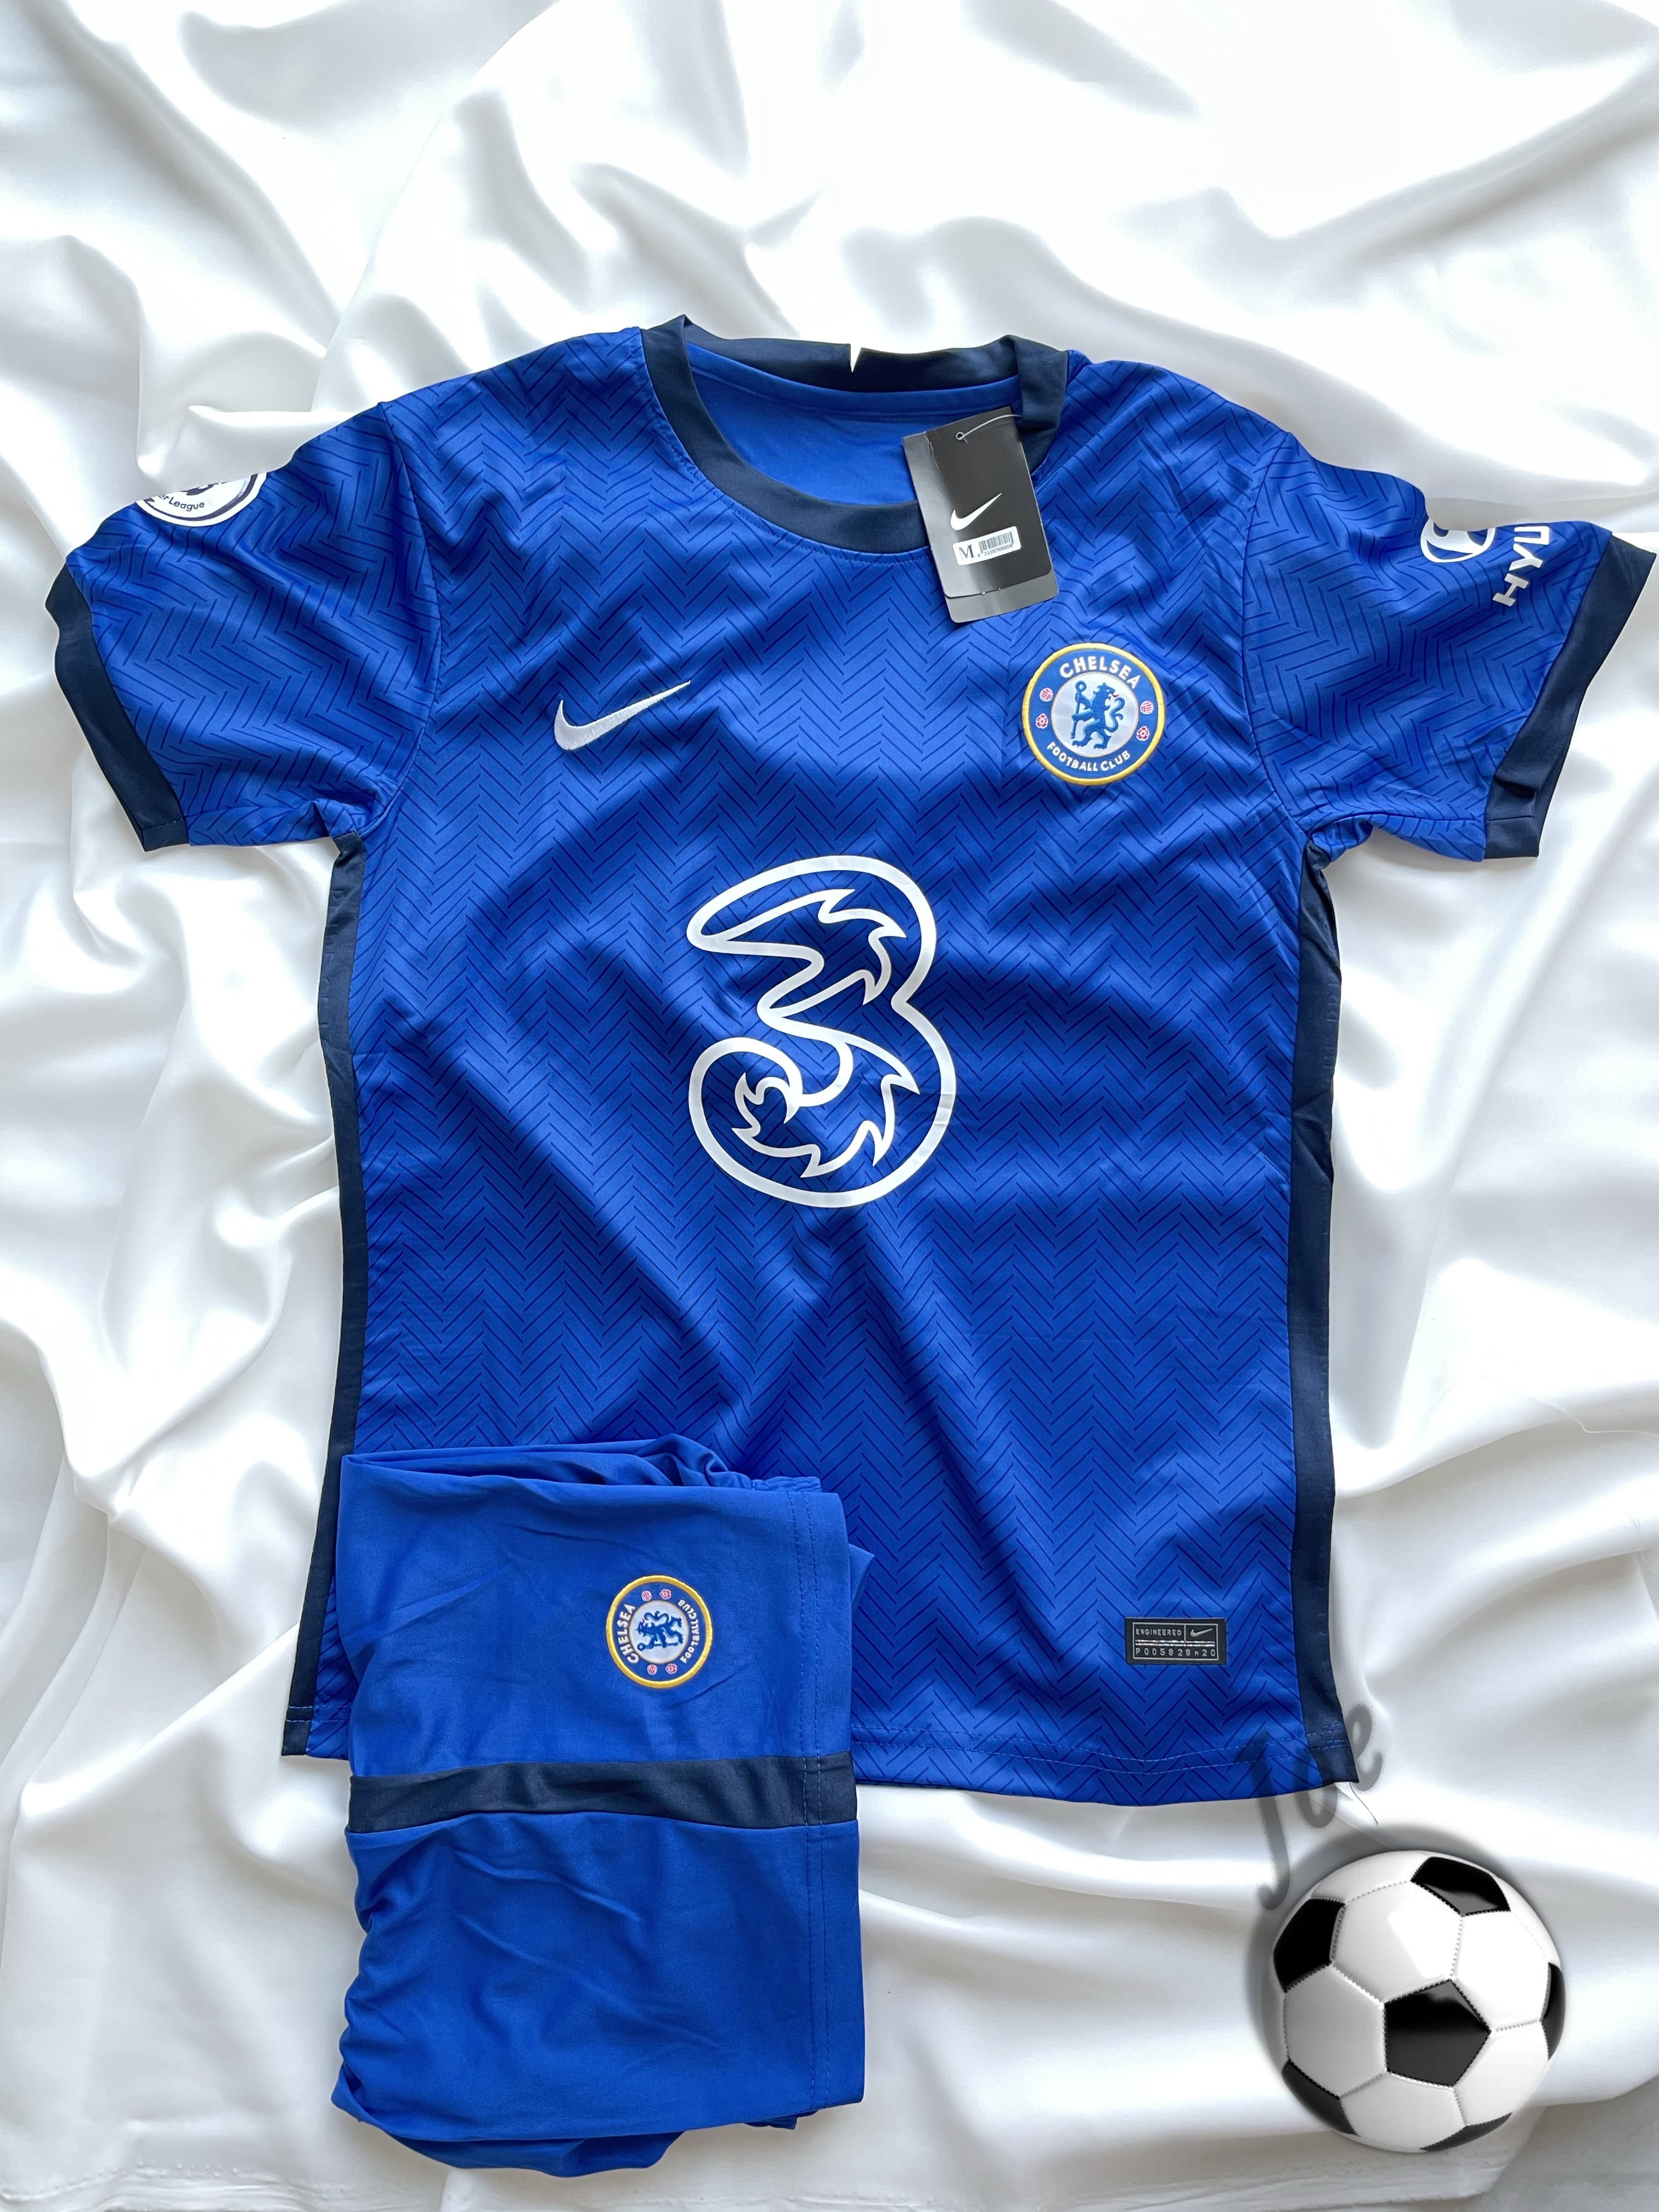 ชุดบอล Chelsea เสื้อบอลและกางเกงบอลผู้ชายลีกยุโรป ปี 2020-2021 ใหม่ล่าสุด